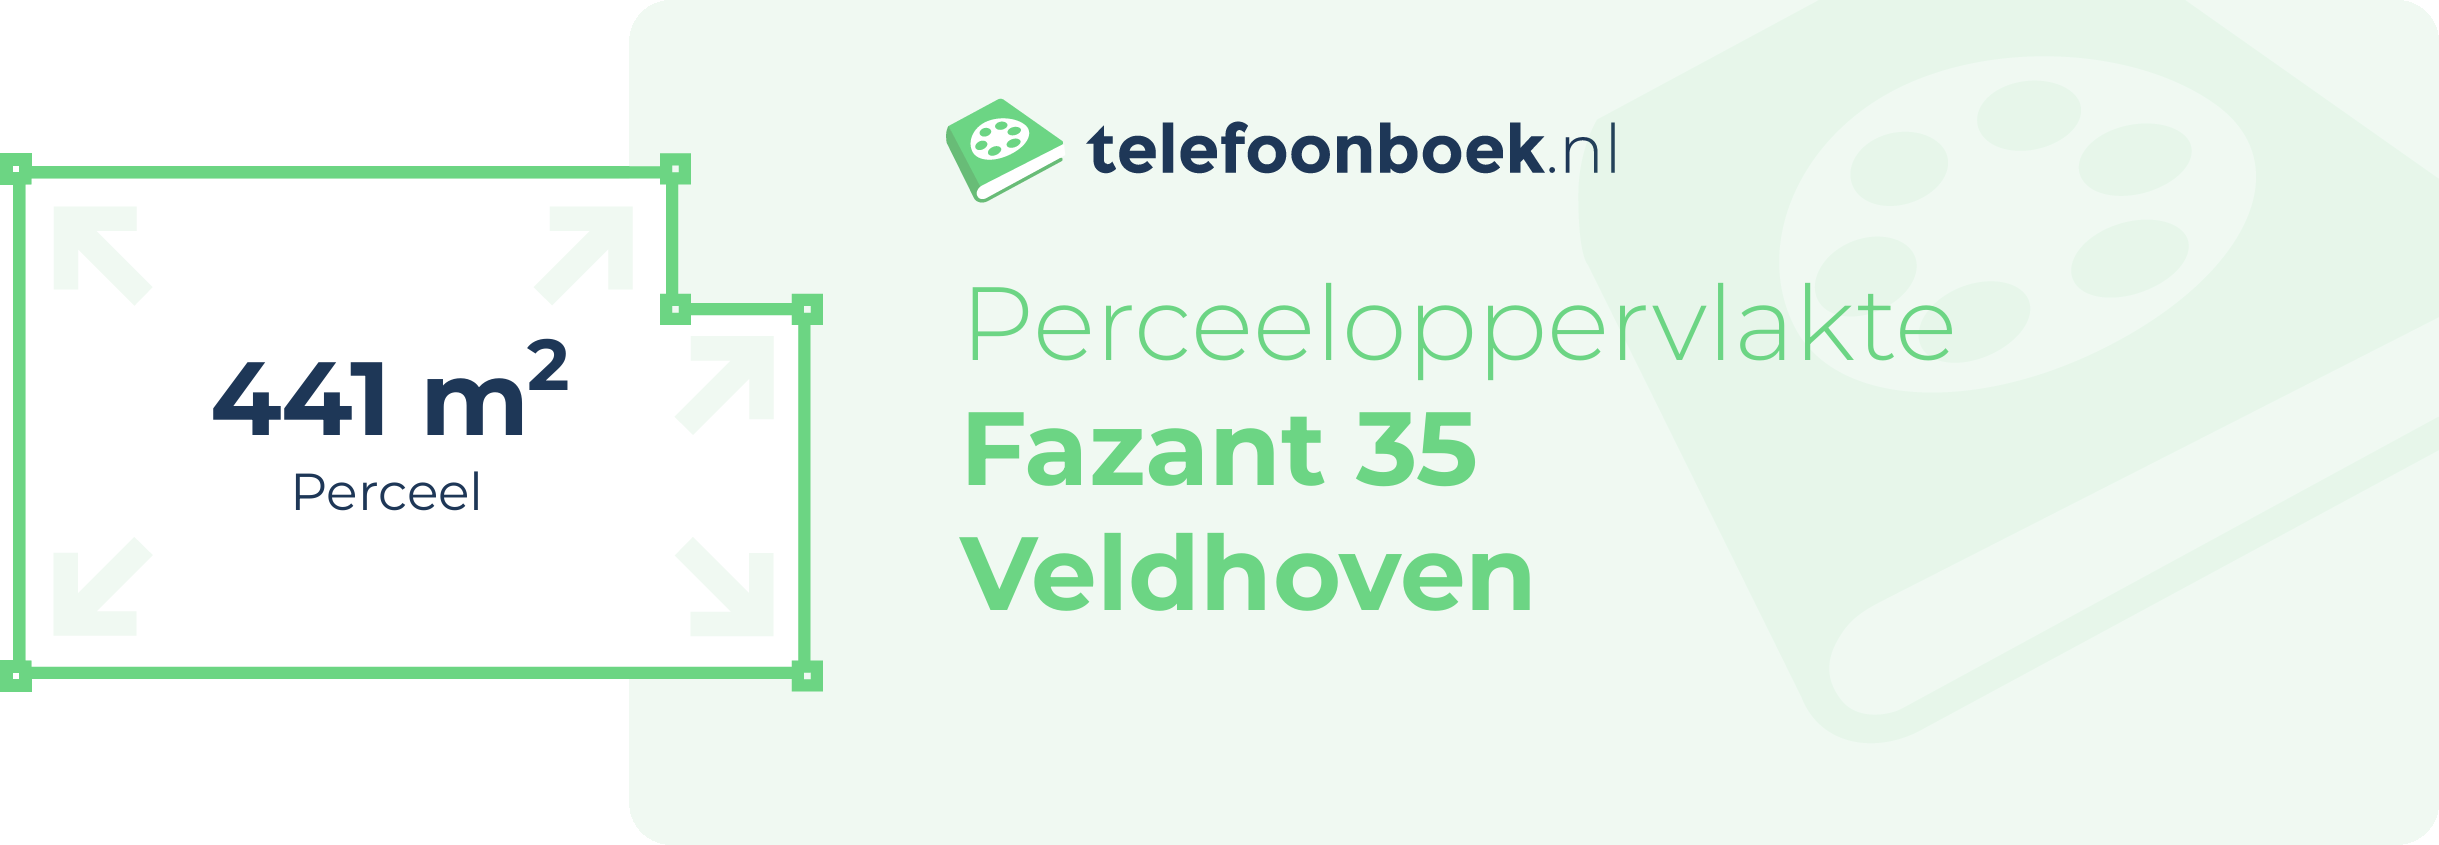 Perceeloppervlakte Fazant 35 Veldhoven